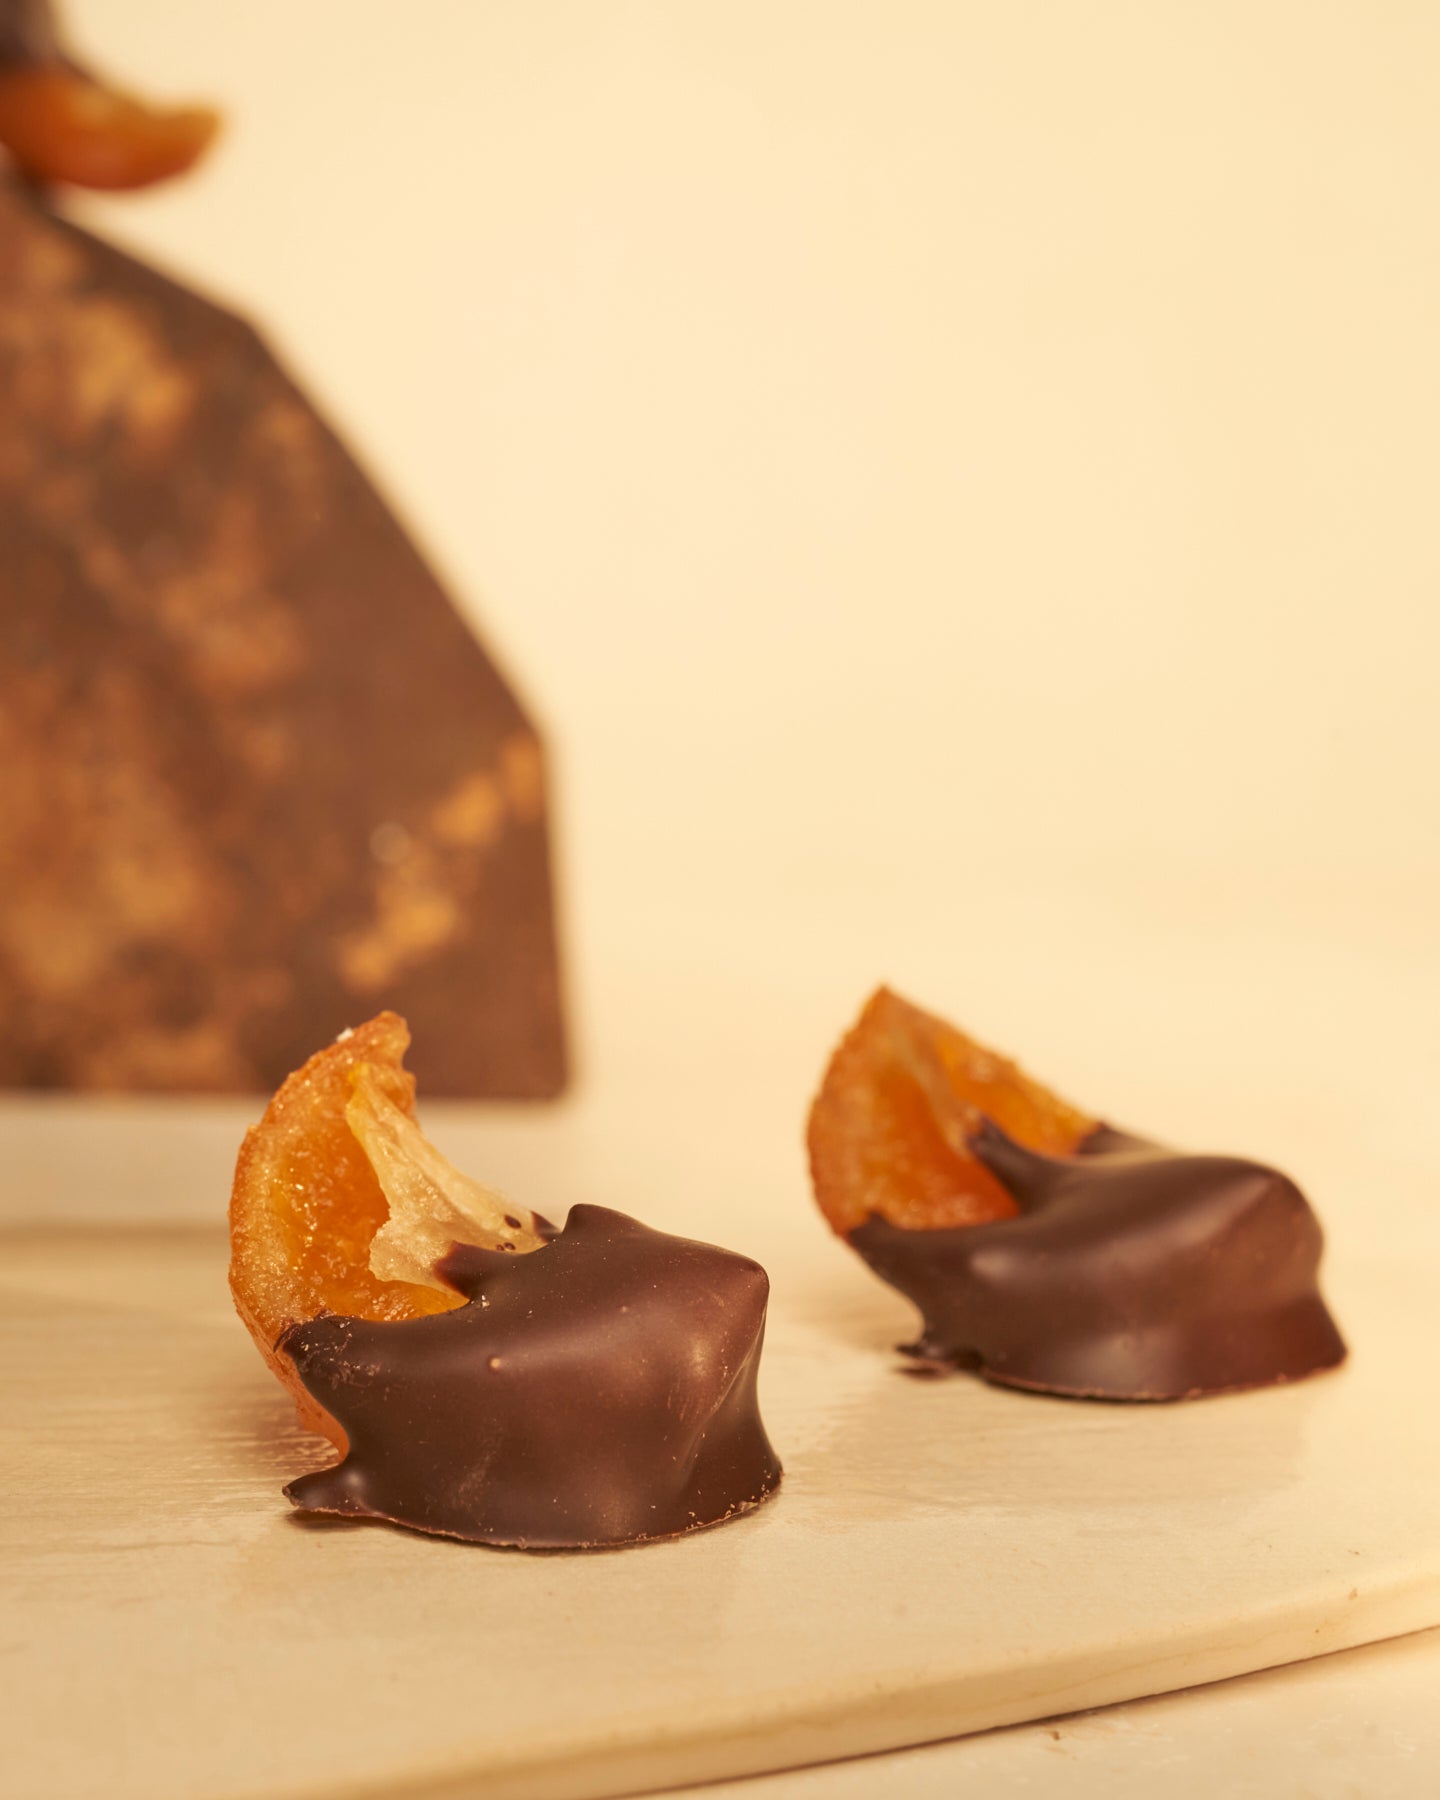 Clementine Candite Ricoperte di Cioccolato Fondente